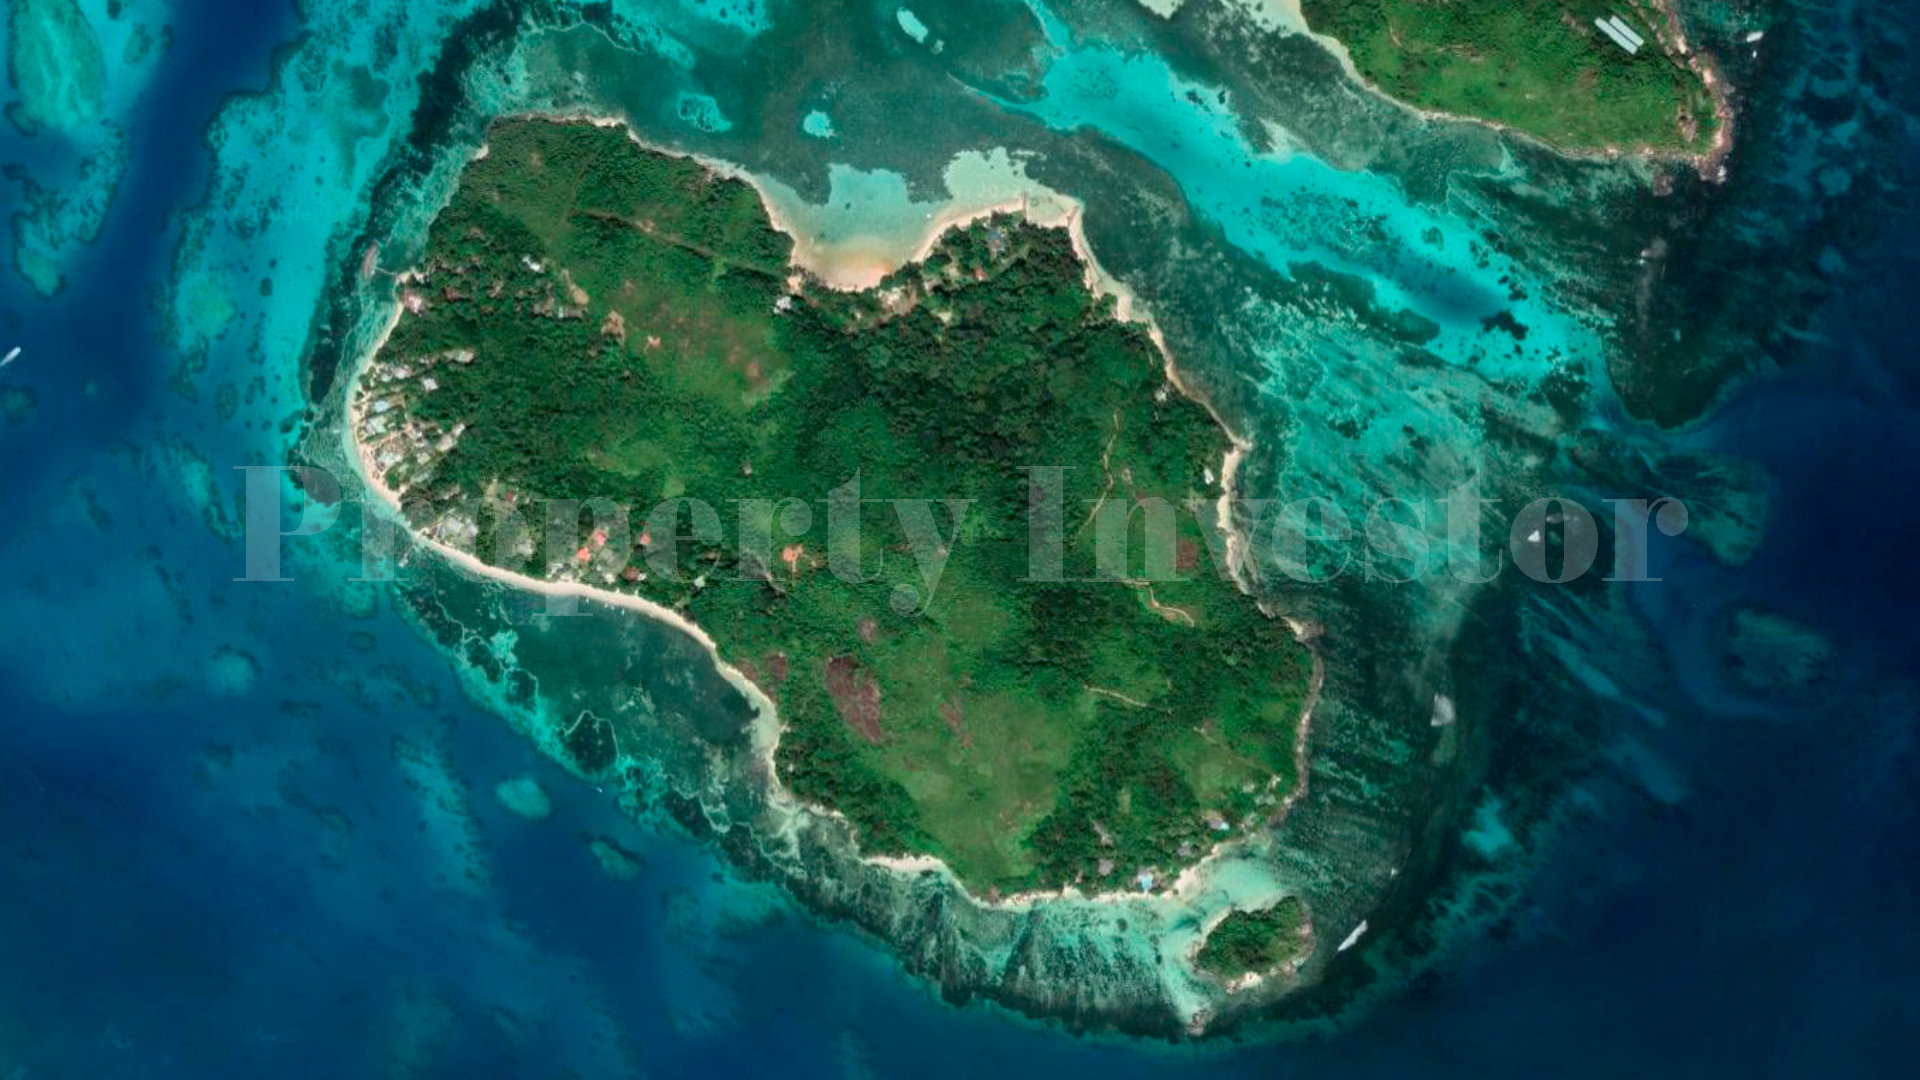 Участок земли 97 соток с 30 метровым берегом пляжа под туристическую застройку на острове Сёрф, Сейшелы